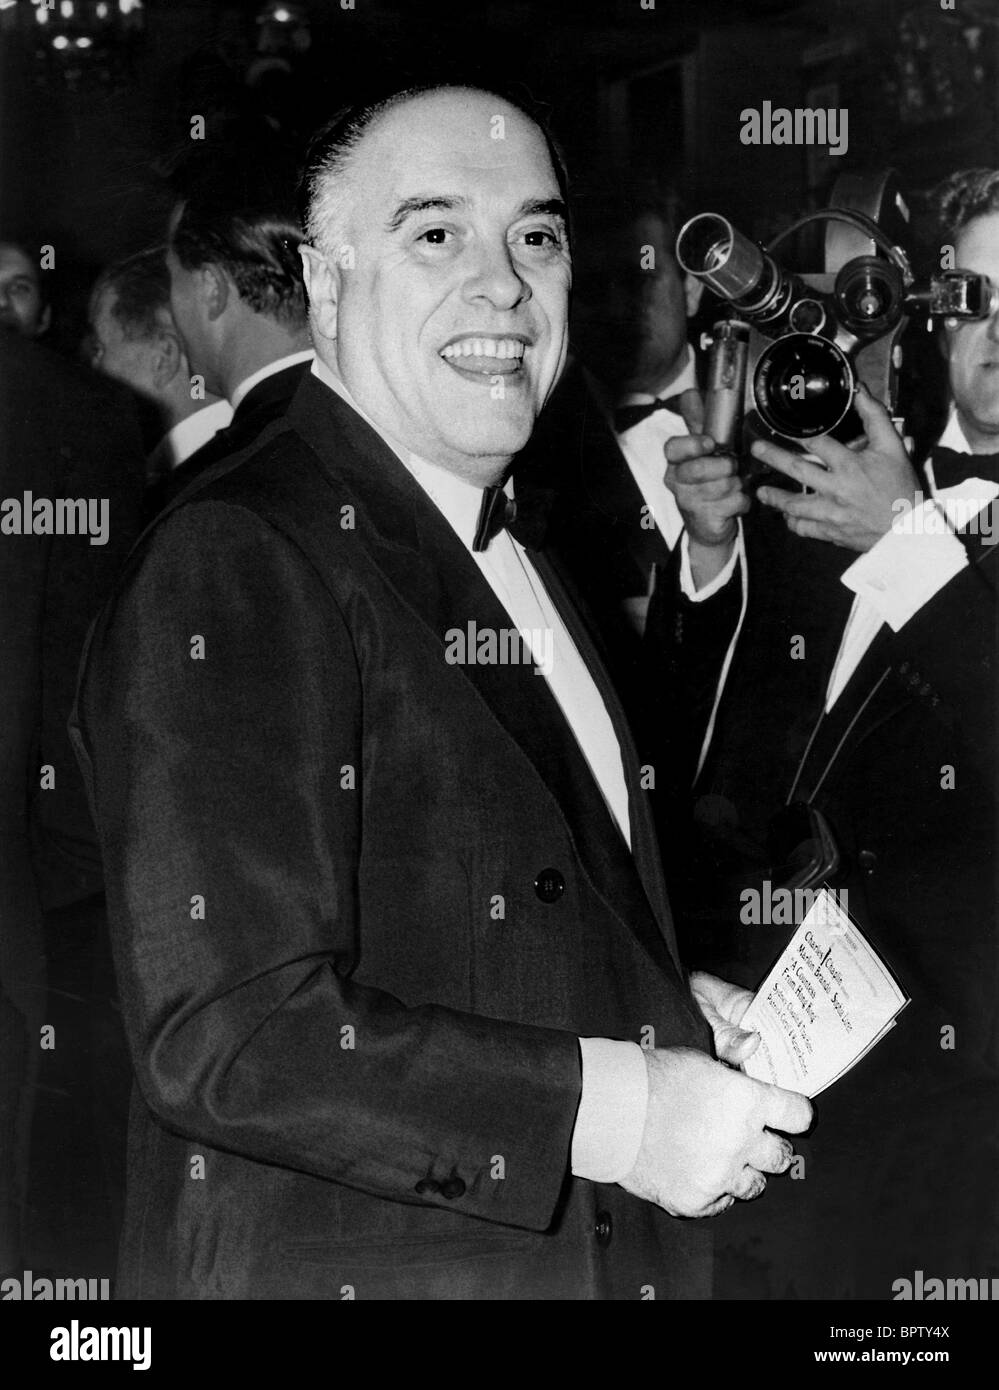 CARLO PONTI DIRECTOR (1965) Stock Photo